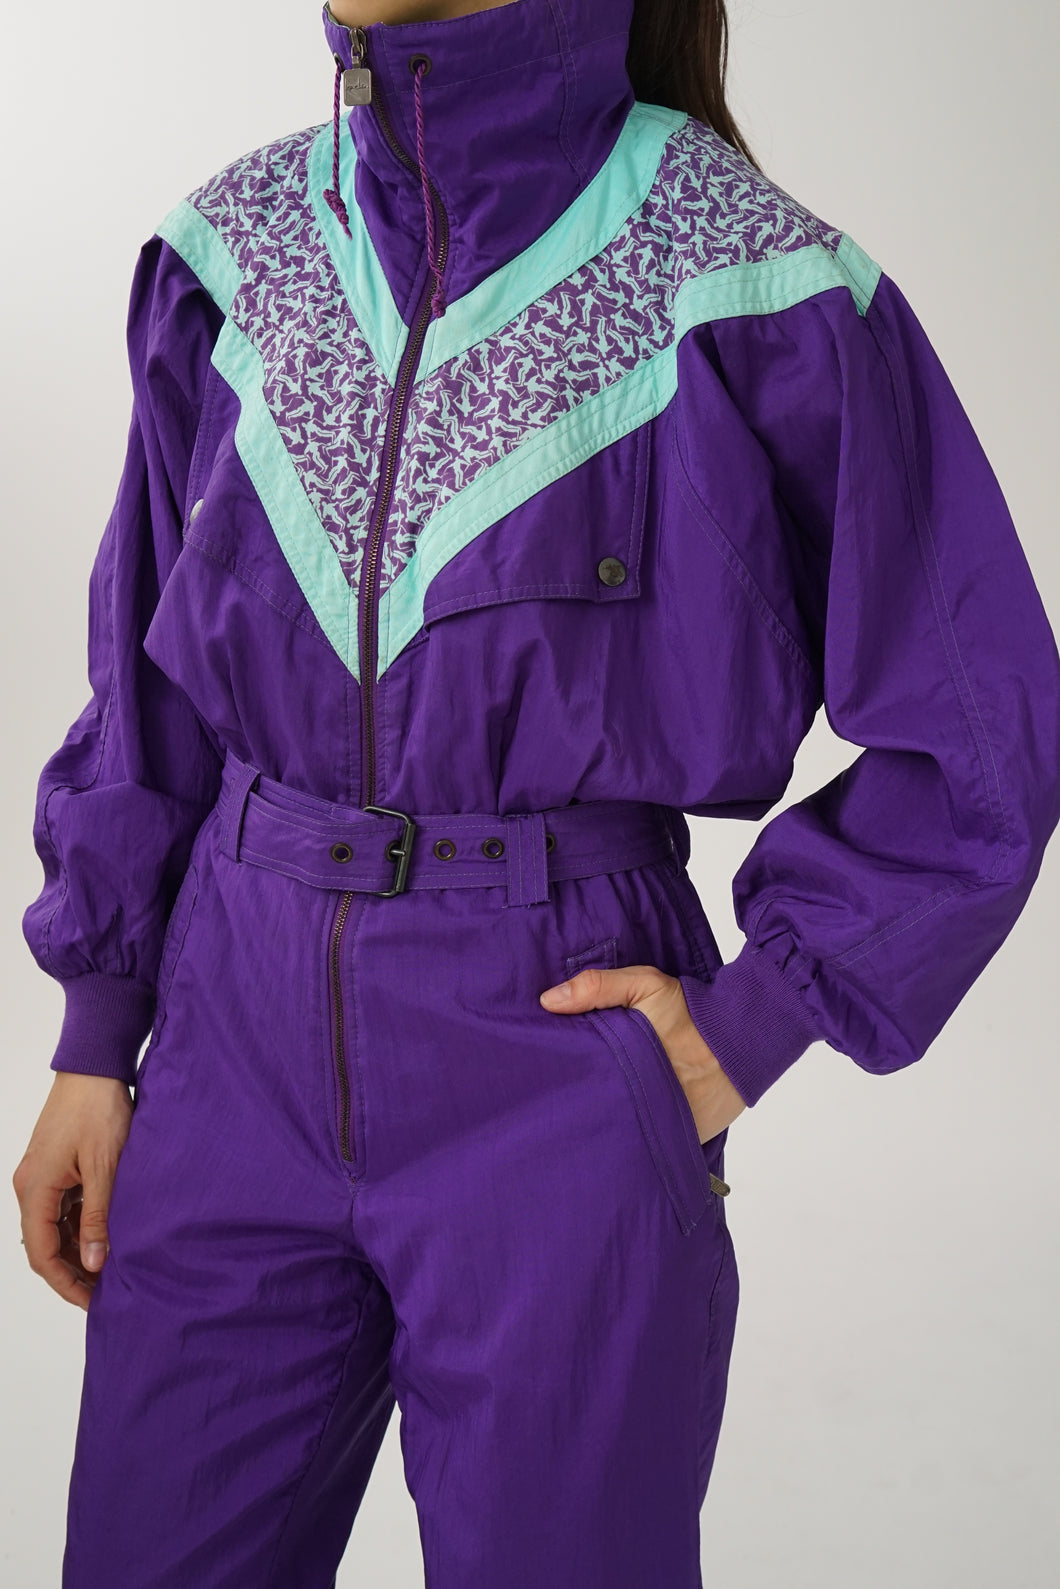 One piece vintage Kaelin Skiwear ski suit, snow suit léger mauve et turquoise unisex taille 8 (S-M)